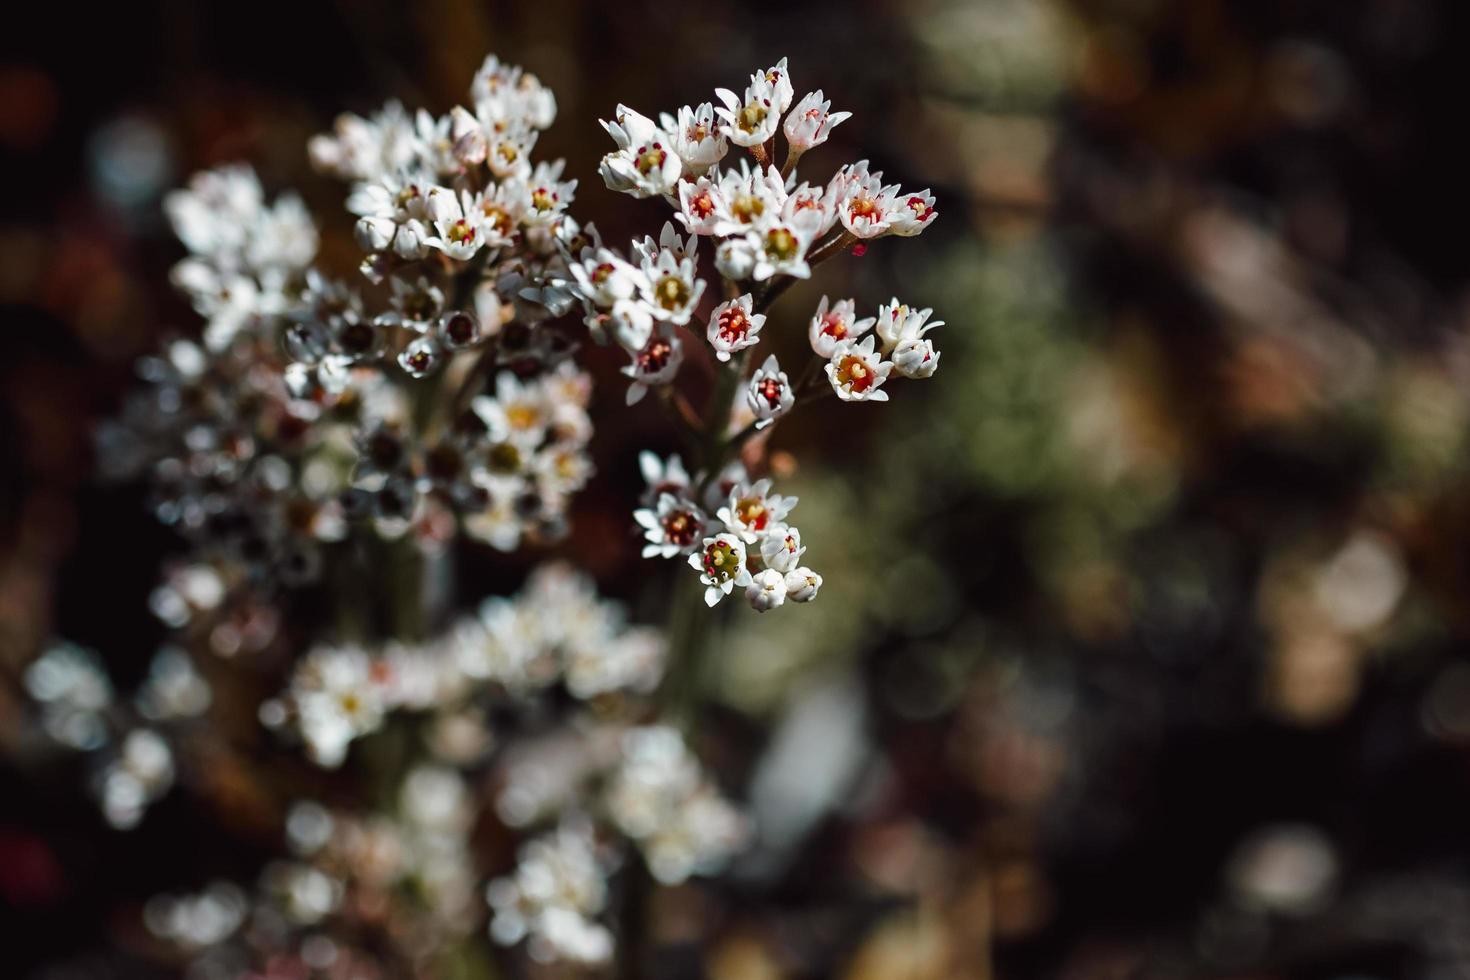 Small white flowers in tilt shift lens photo